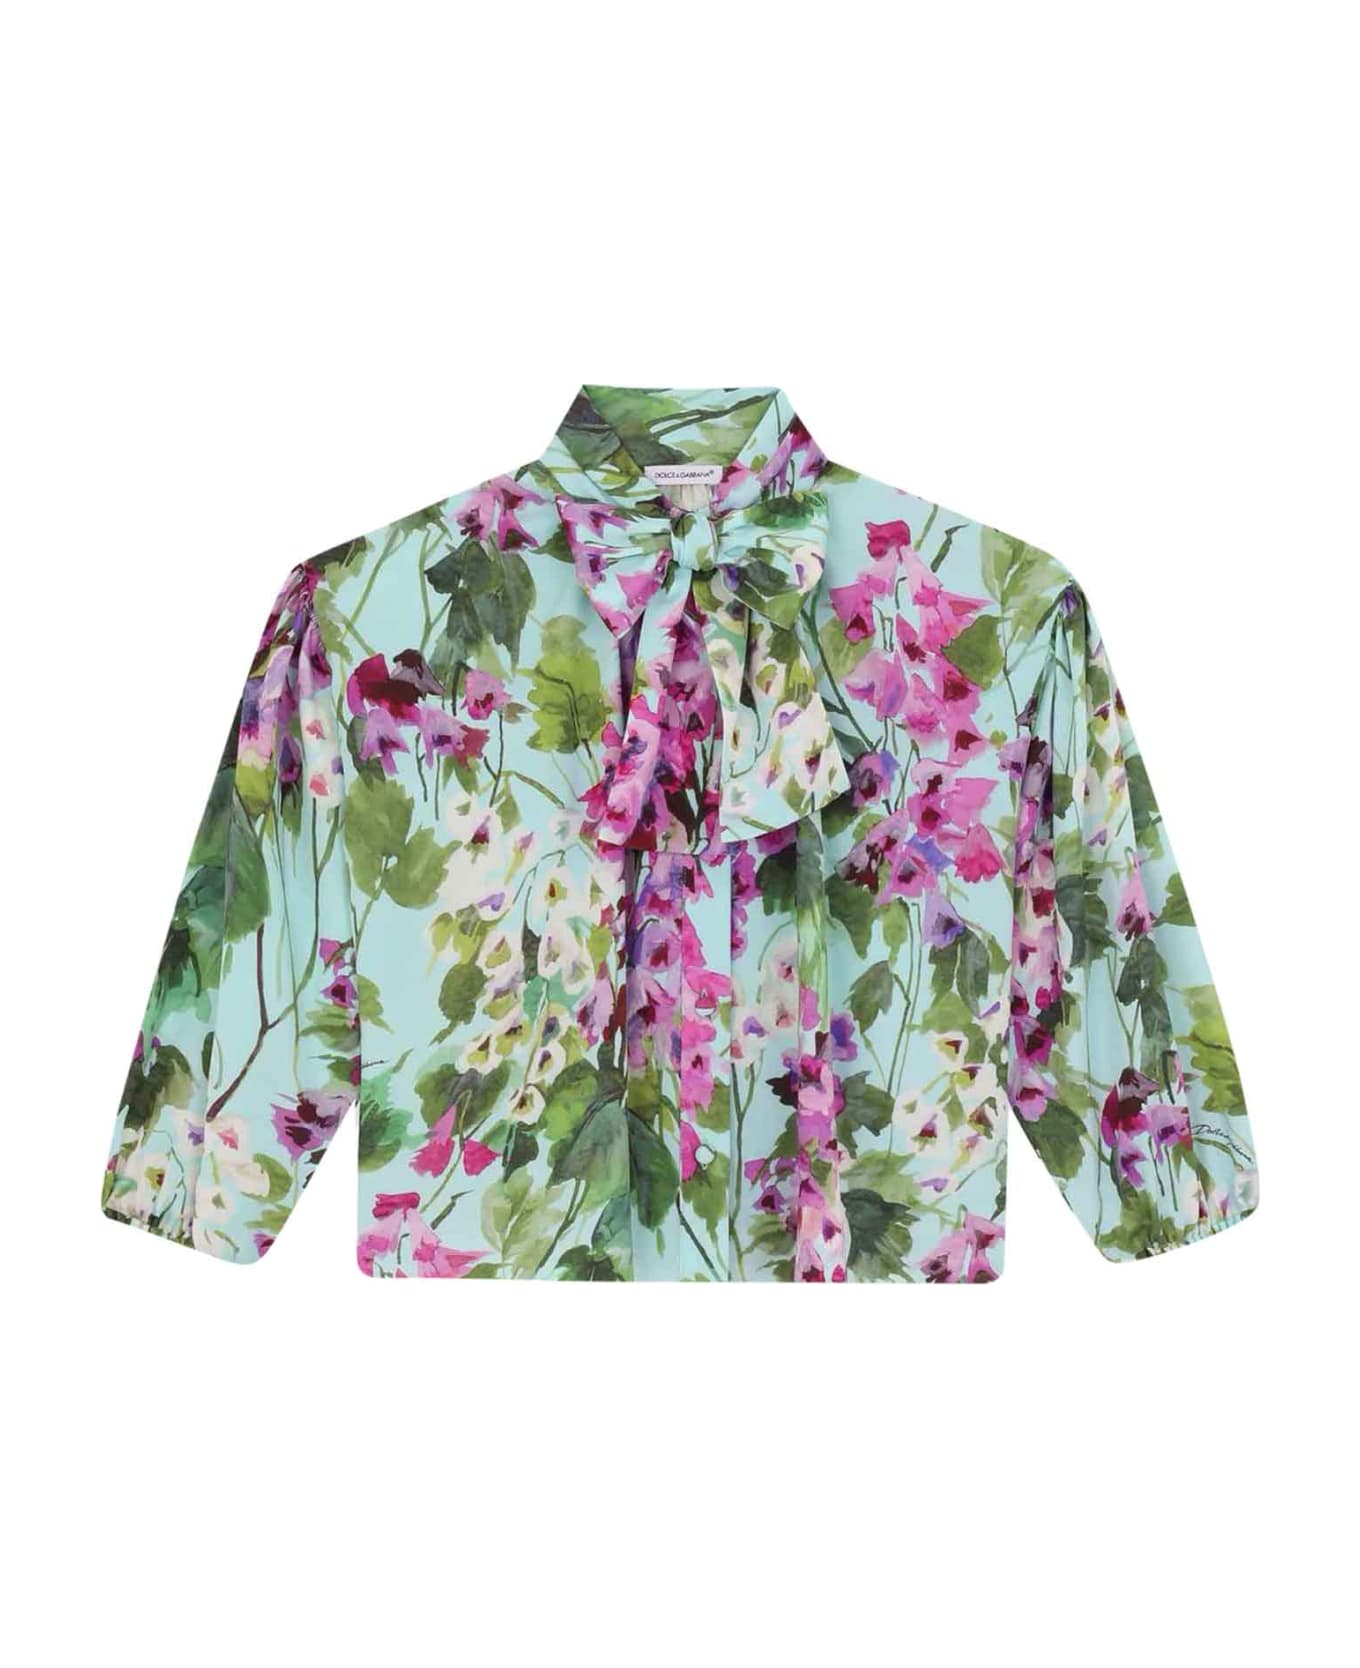 Dolce & Gabbana Girl Floral Shirt - Fantasia